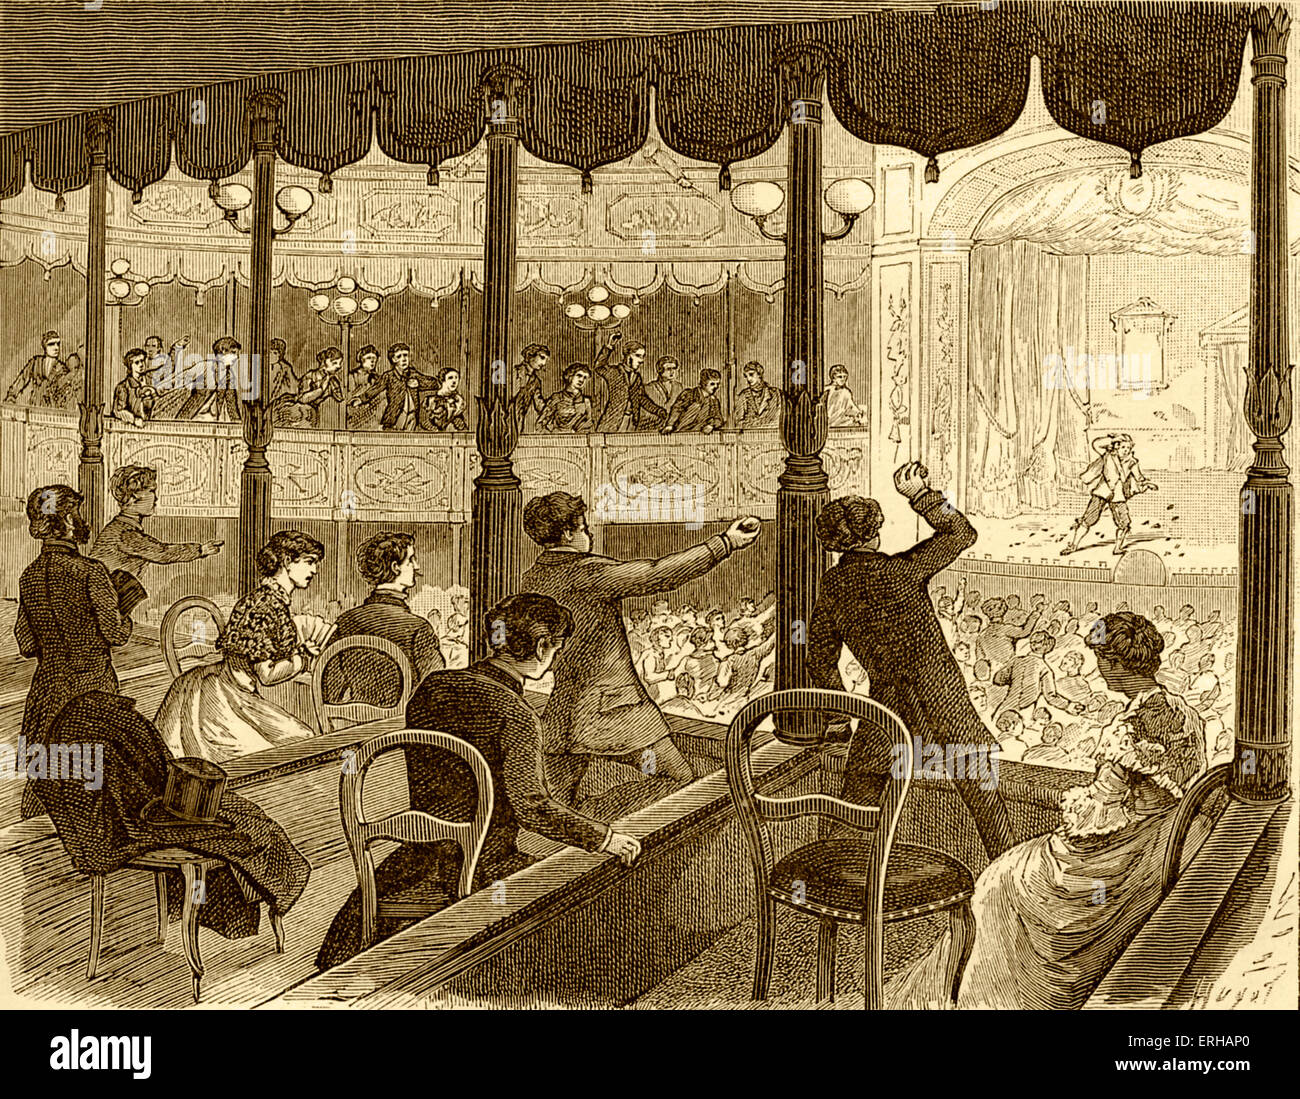 Publikum werfen gekocht Äpfel an Schauspieler - Cartoon (Gravur), veröffentlicht 1885. Frühere französische Tradition des Werfens kommentieren Stockfoto